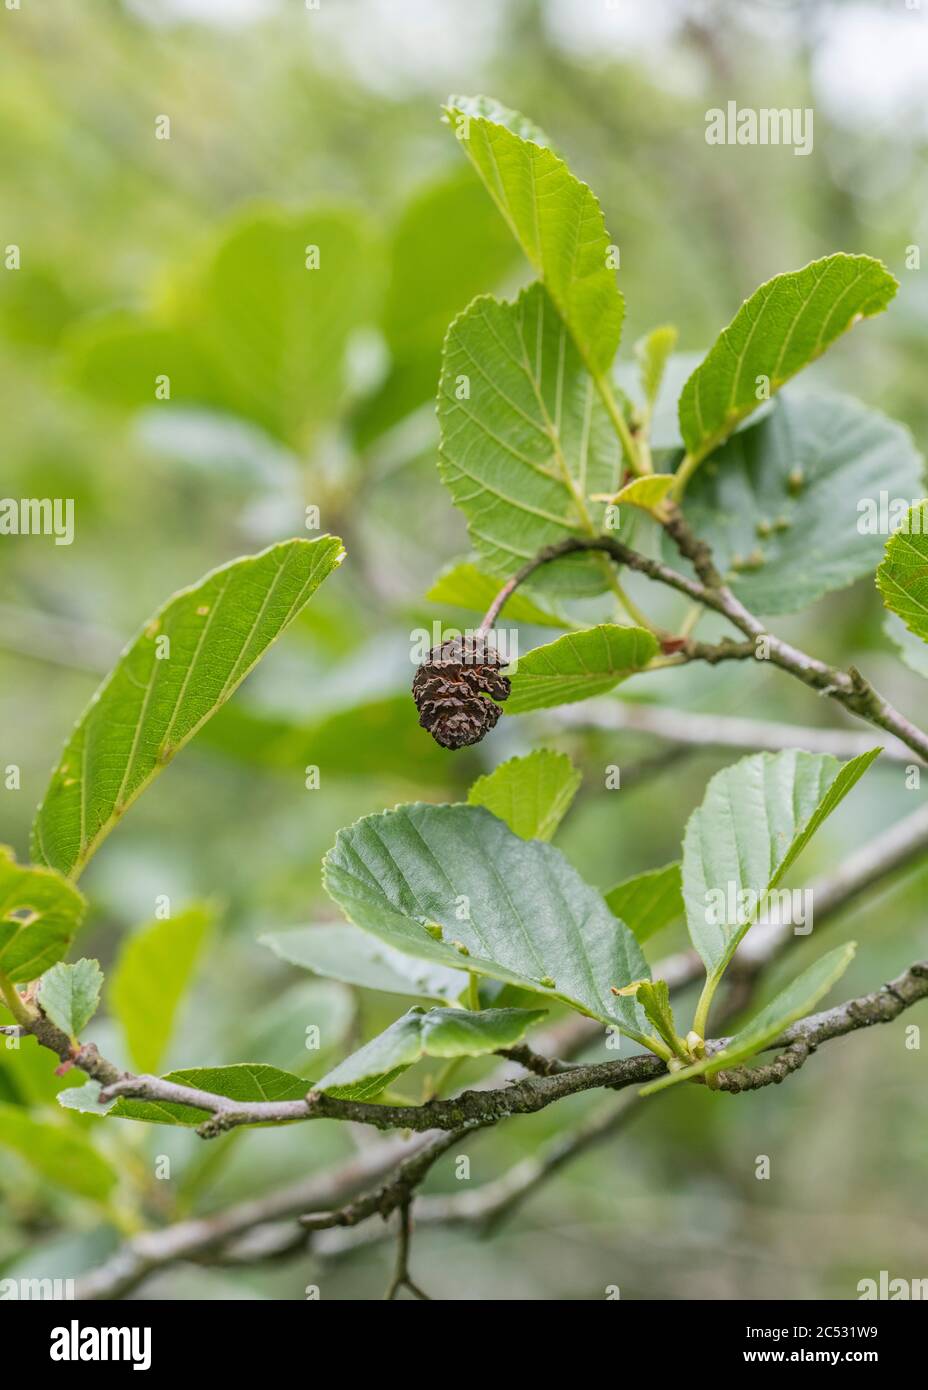 Reife weibliche Katzenschnupfen Früchte einer Gemeine Erle / Alnus glutinosa Baum. Erle einmal als Heilpflanze in pflanzlichen Heilmitteln verwendet. Stockfoto